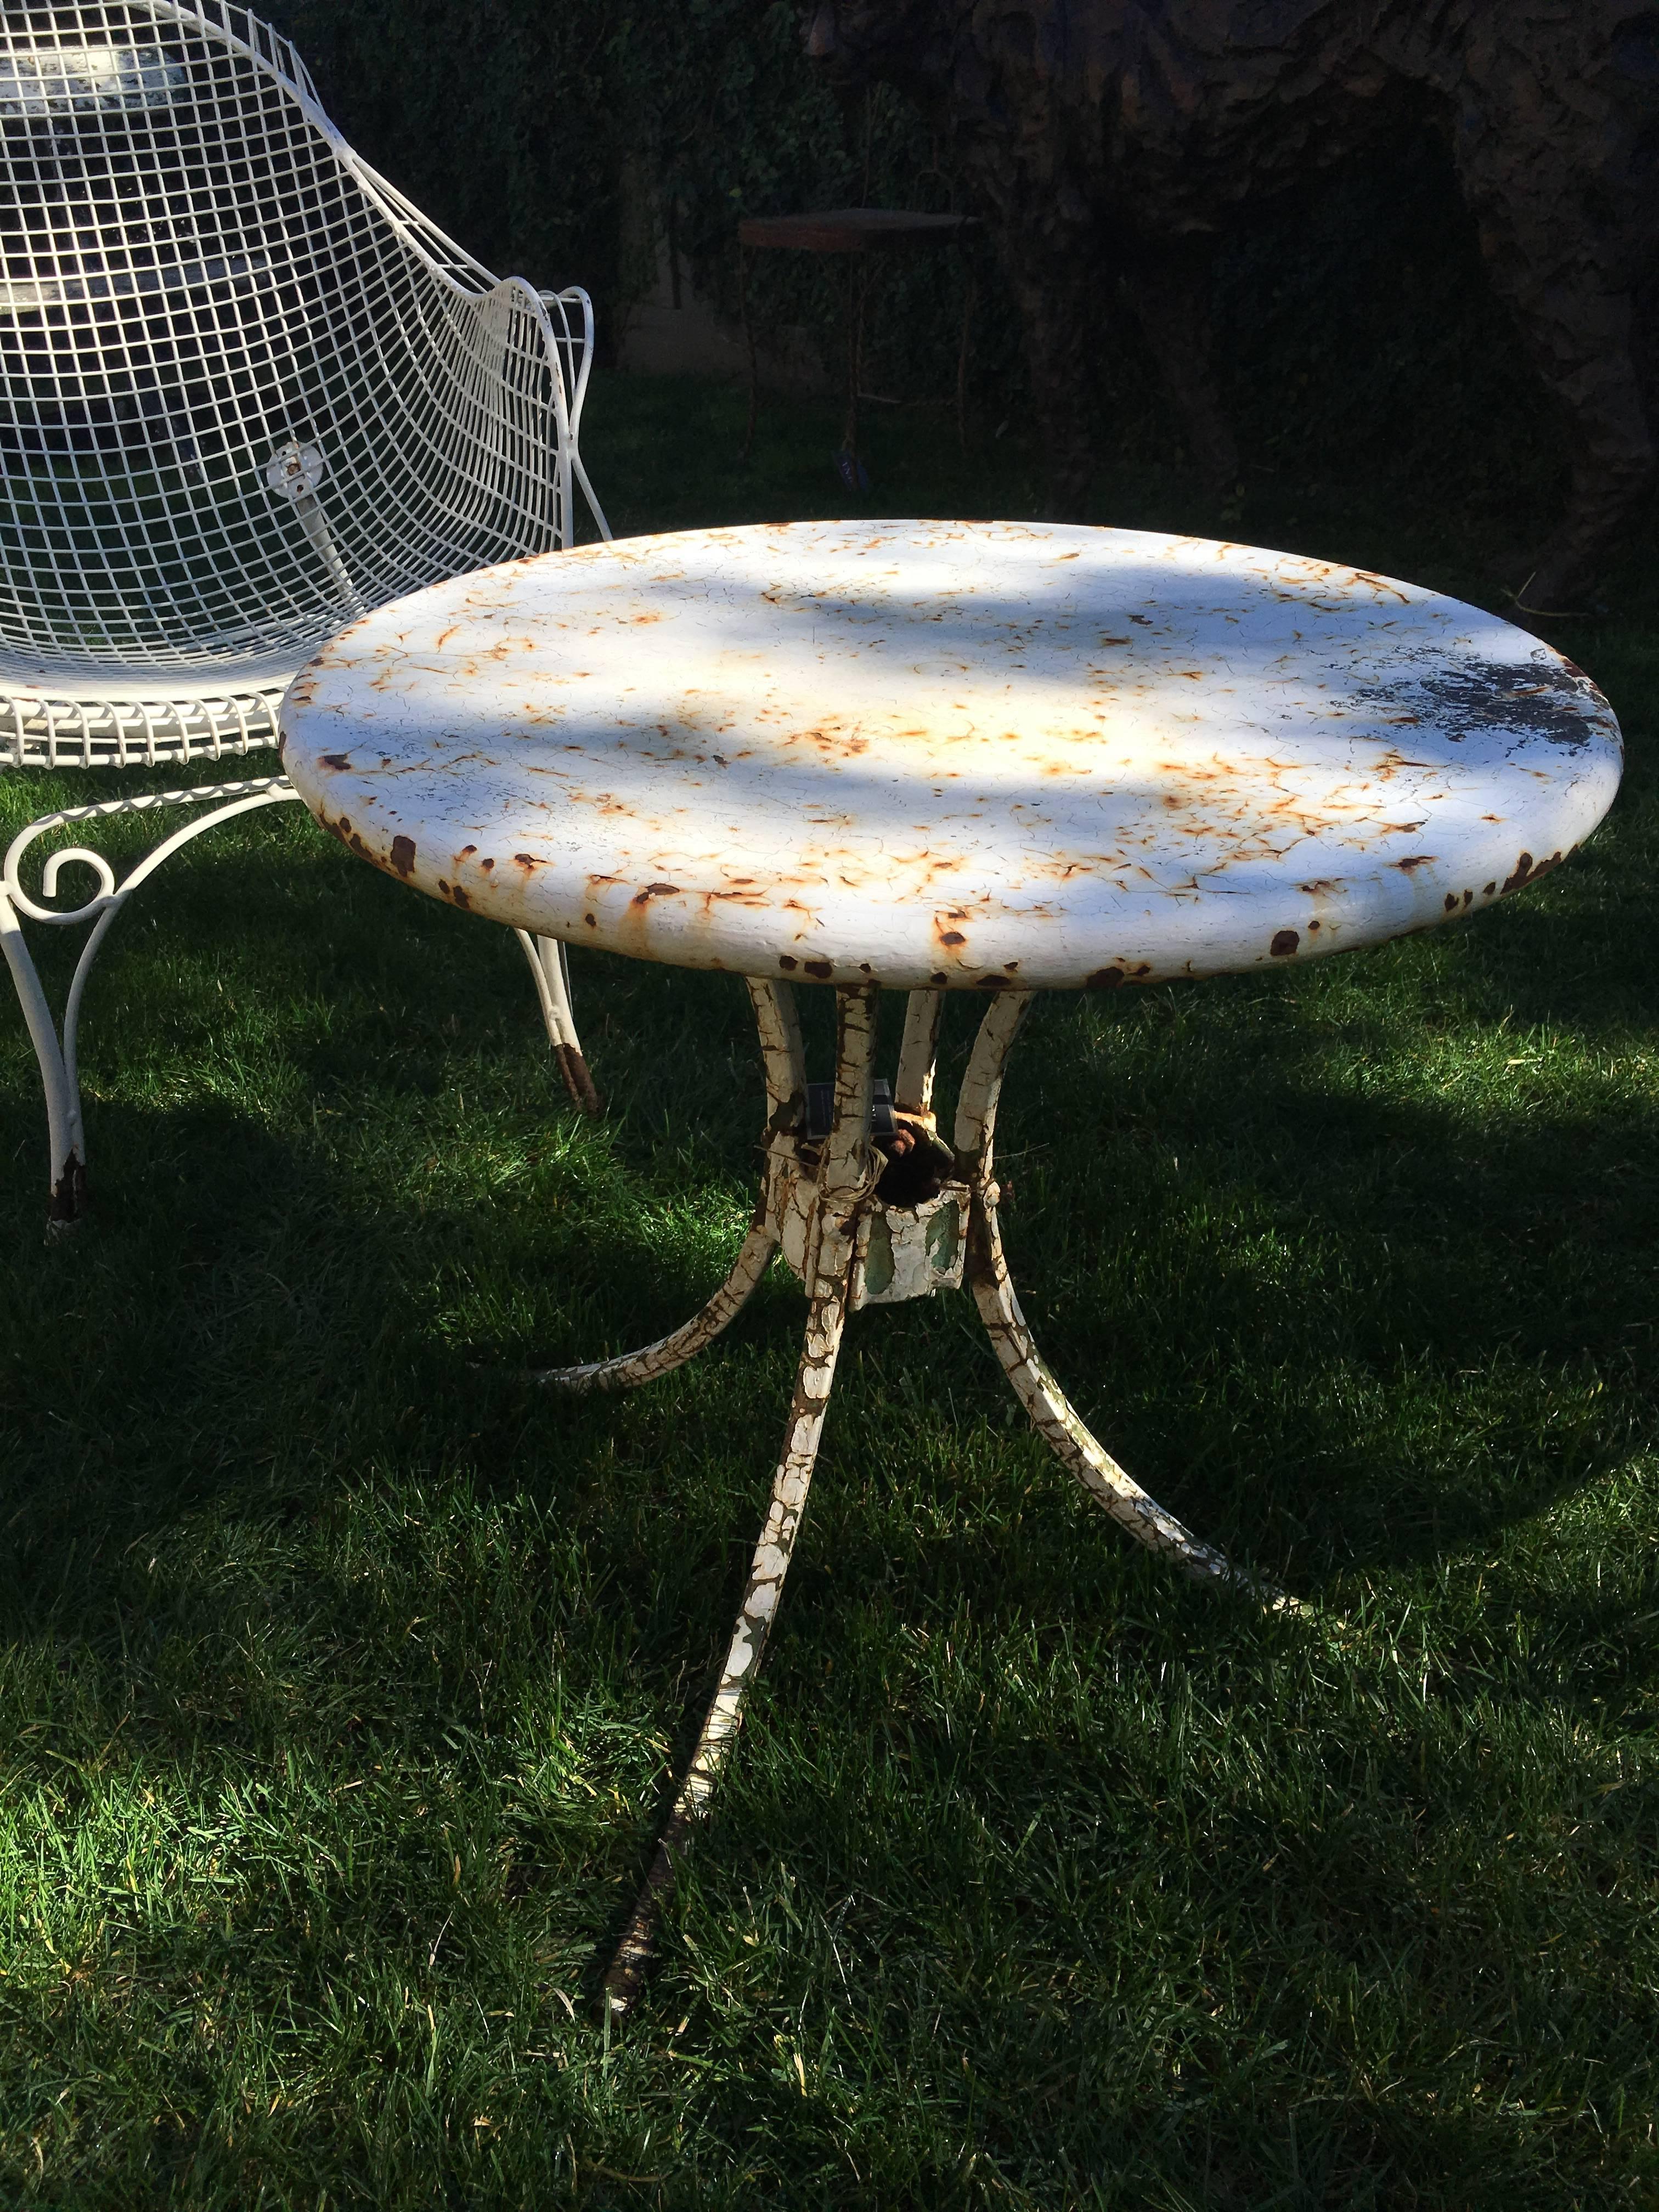 Table d'appoint de jardin en métal américain vintage, circa 1950. Surface de la table peinte en blanc avec d'épaisses craquelures. Les jambes sont peintes en blanc également, avec une couche de vert révélée en dessous. Plateau et pieds en deux